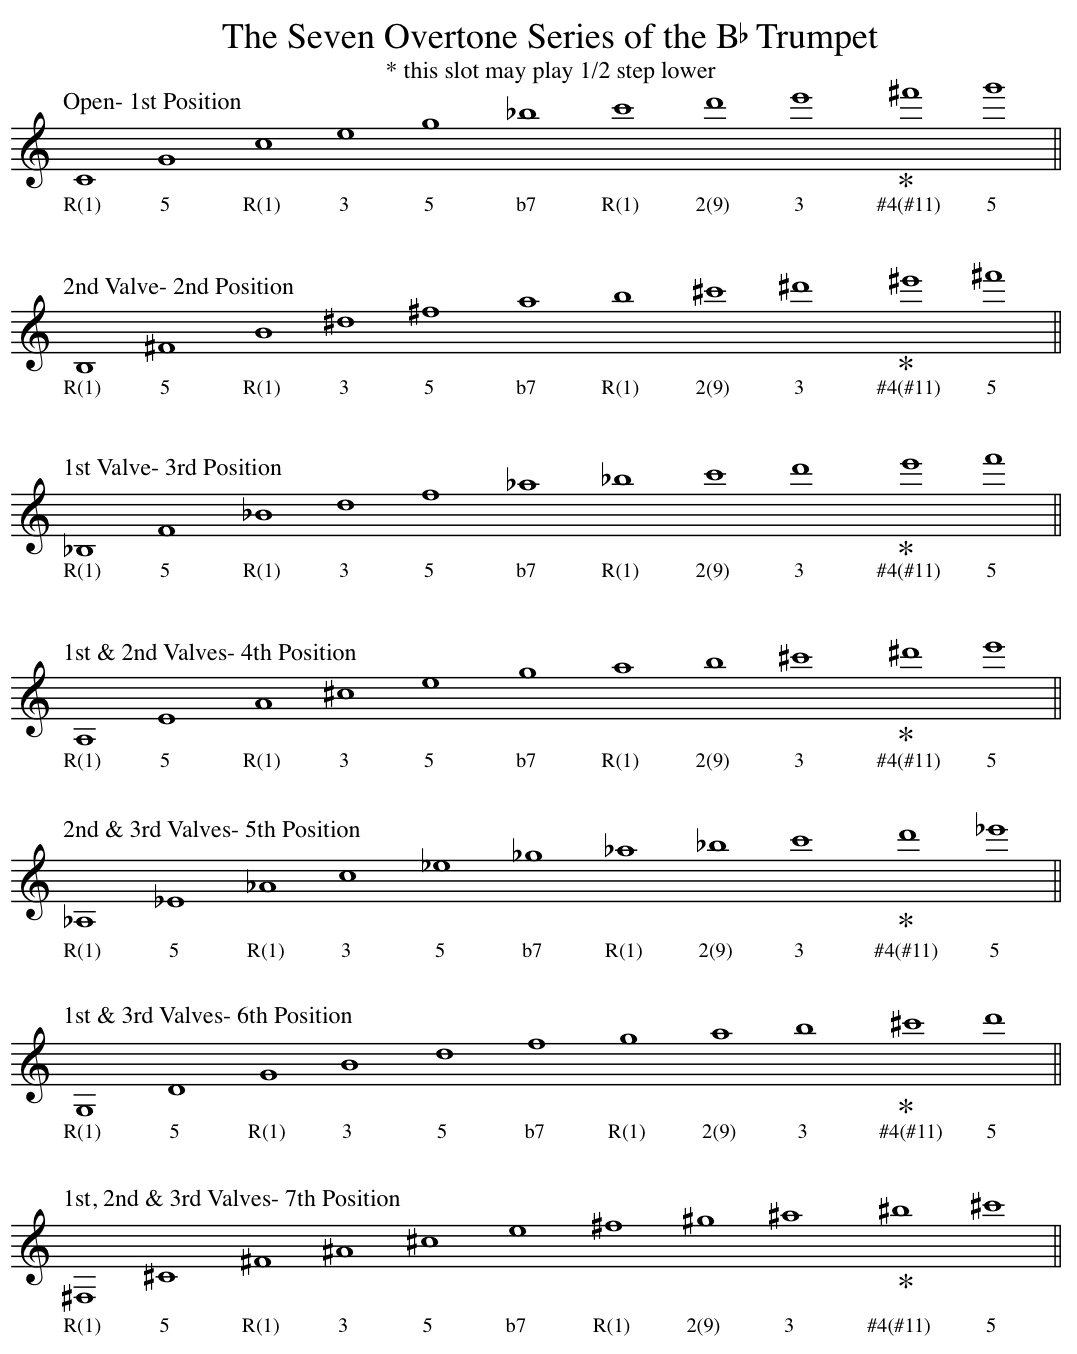 Trumpet Key Chart